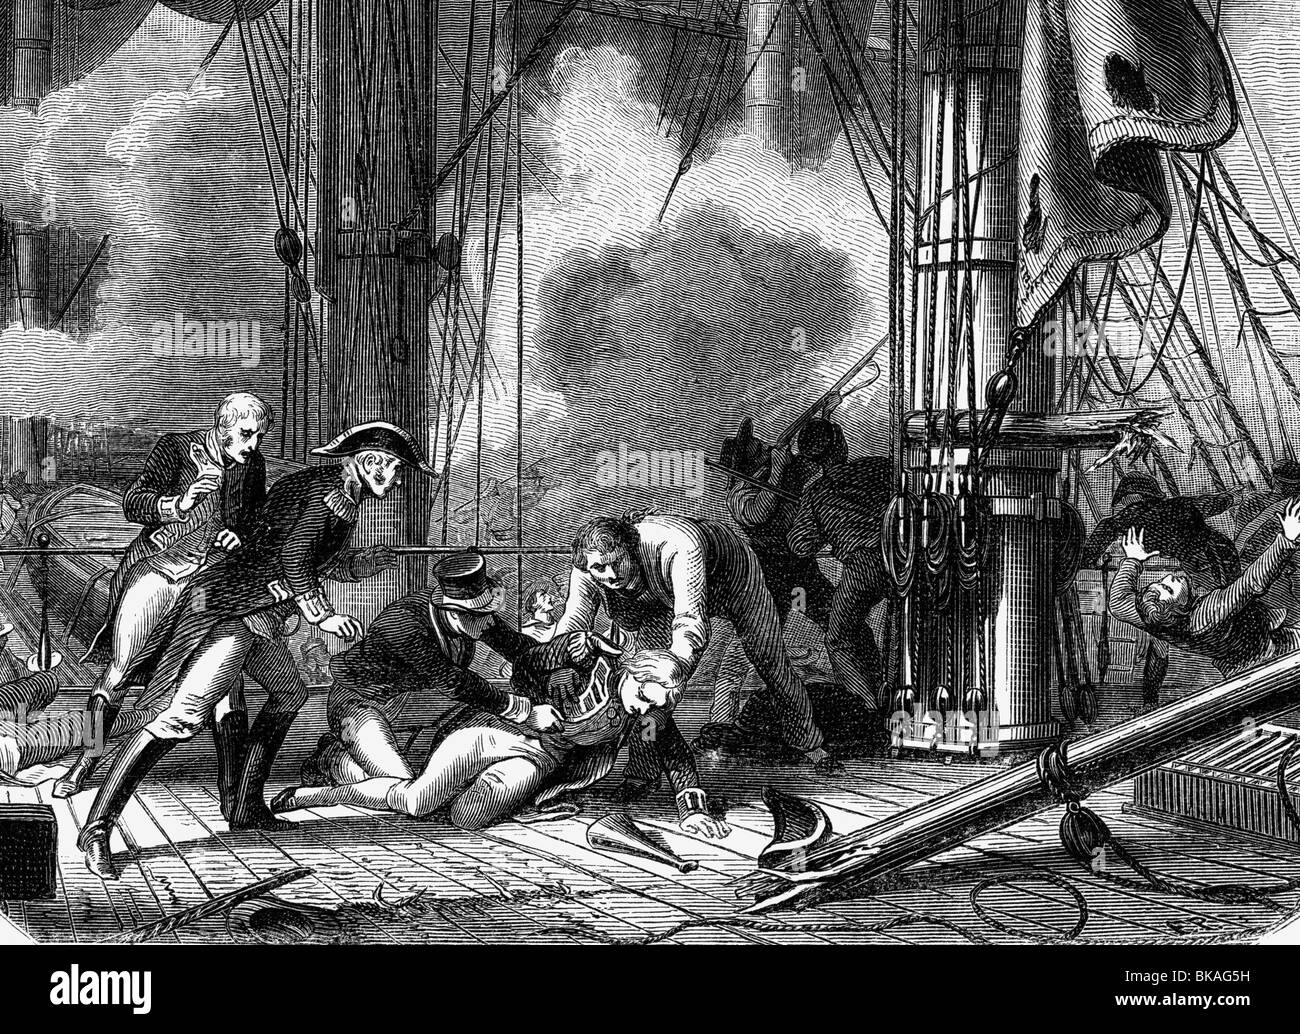 Nelson, Horatio, 29.9.1758 - 21.10.1805, britischer Admiral, Tod in der Schlacht von Trafalgar, Holzgravur, 19. Jahrhundert, Stockfoto